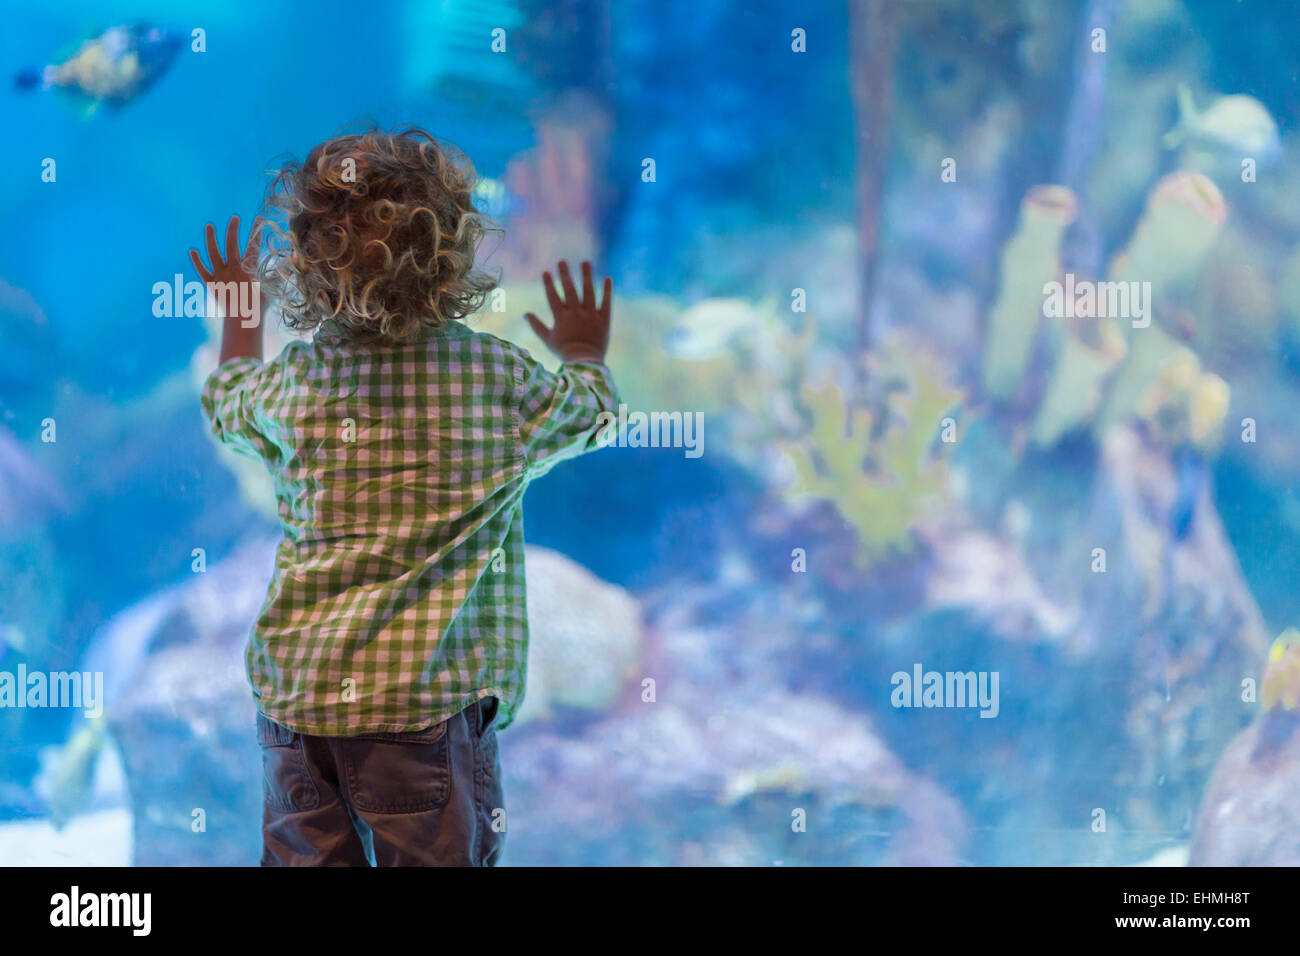 Caucasian baby boy admiring fish in aquarium Stock Photo